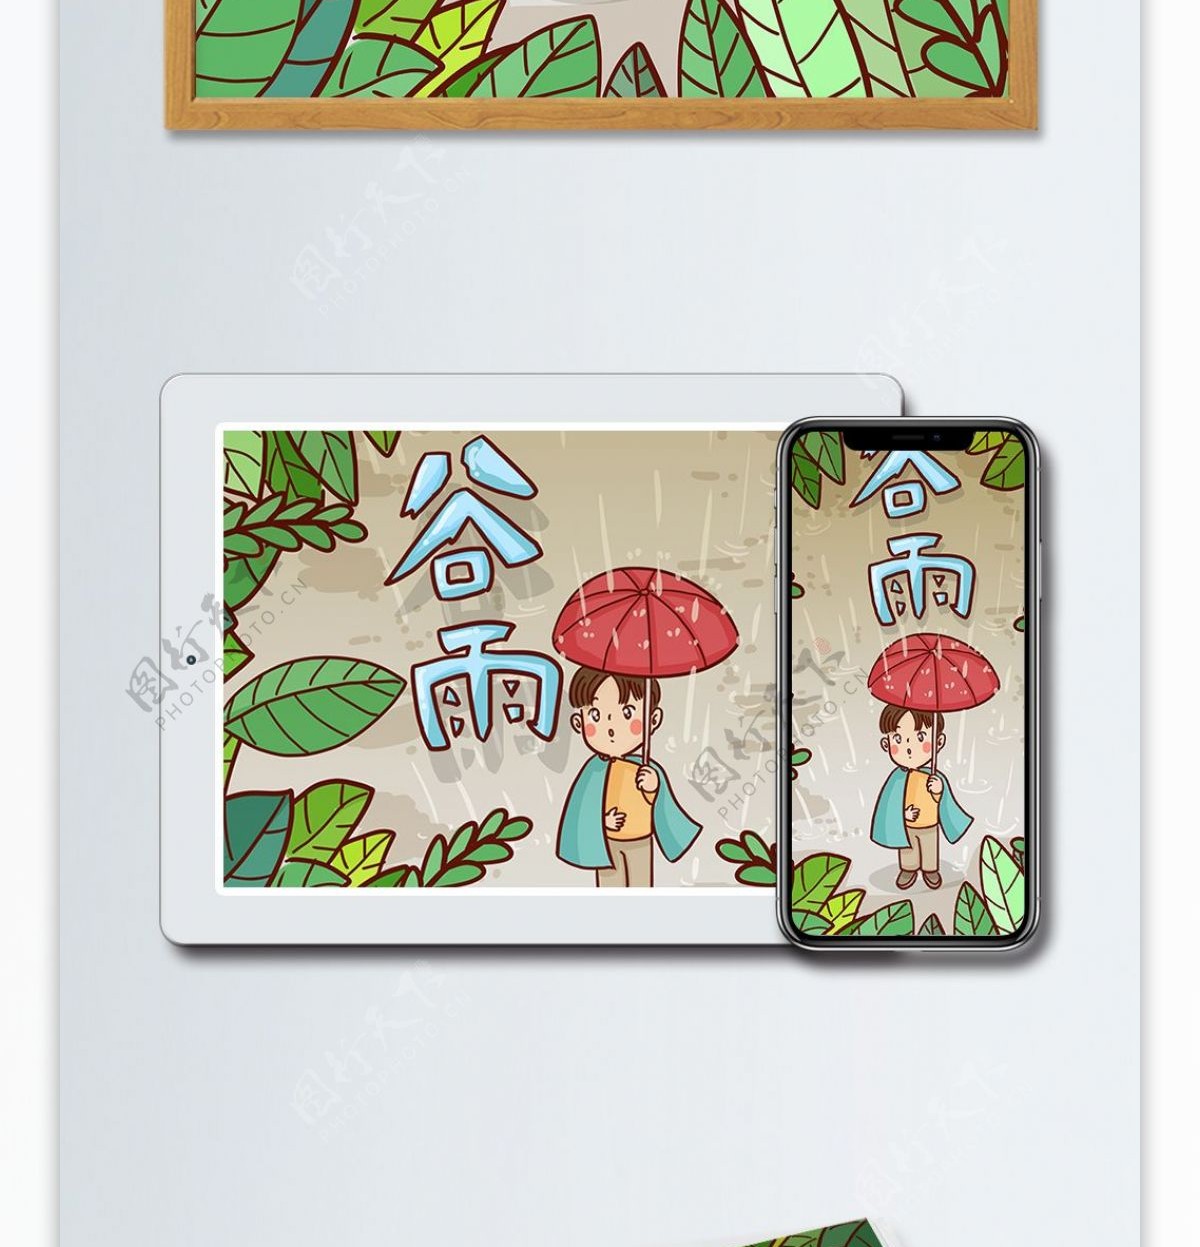 二十四节气谷雨季节男孩撑伞仰望天空插画